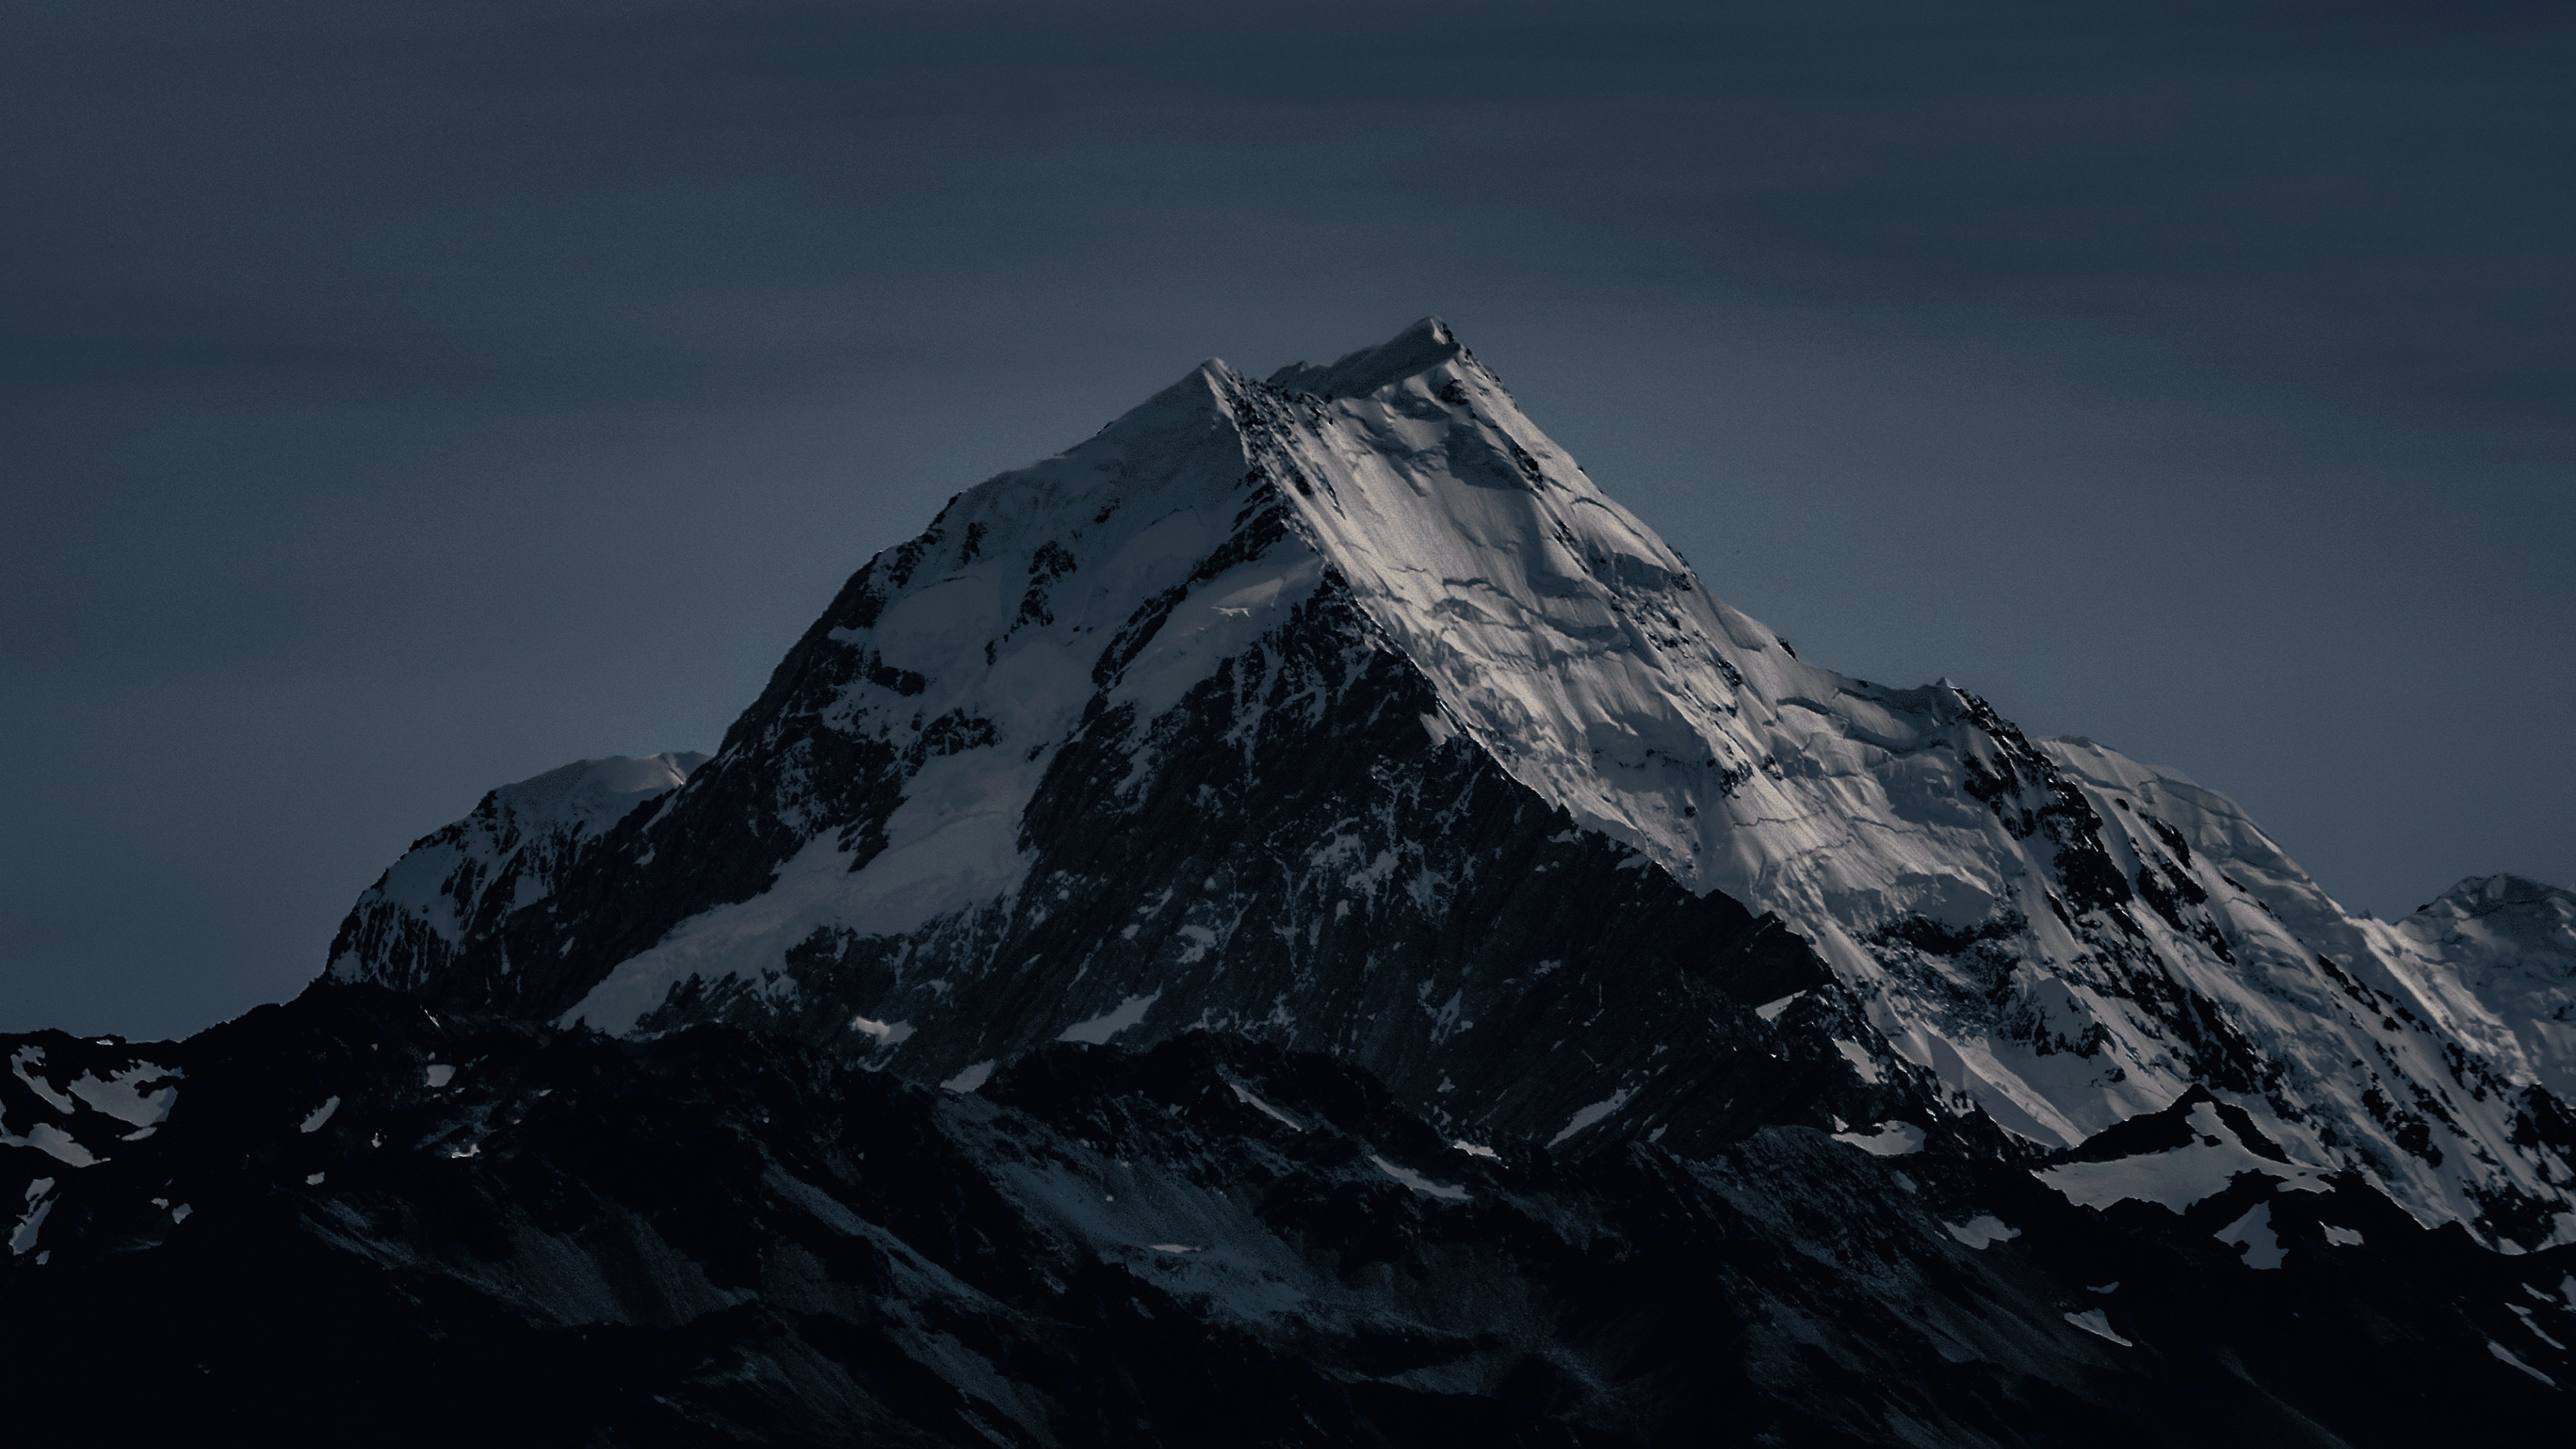 Mountain Peak Photos, Download The BEST Free Mountain Peak Stock